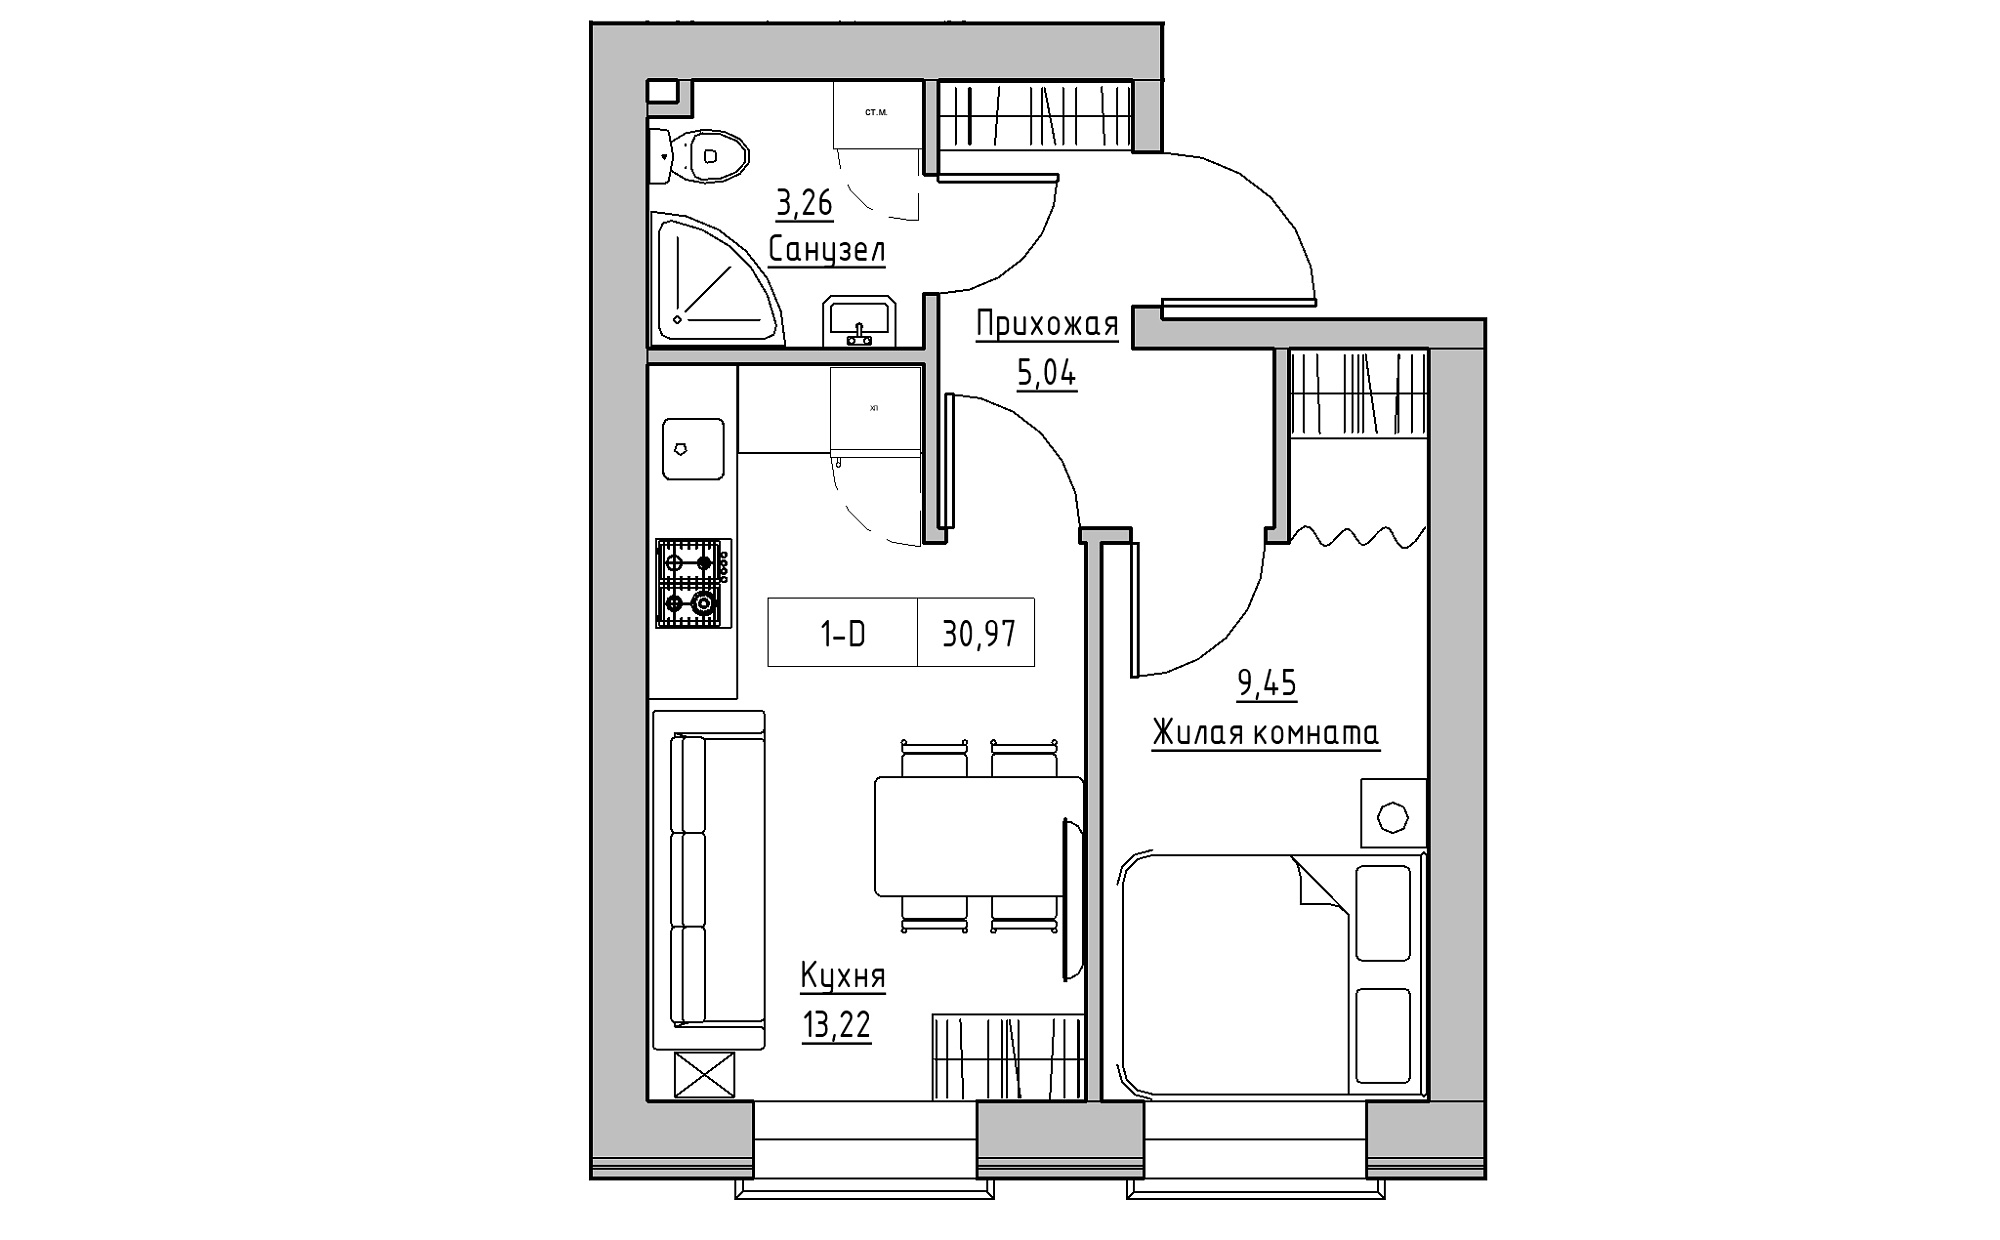 Планировка 1-к квартира площей 30.97м2, KS-022-01/0003.